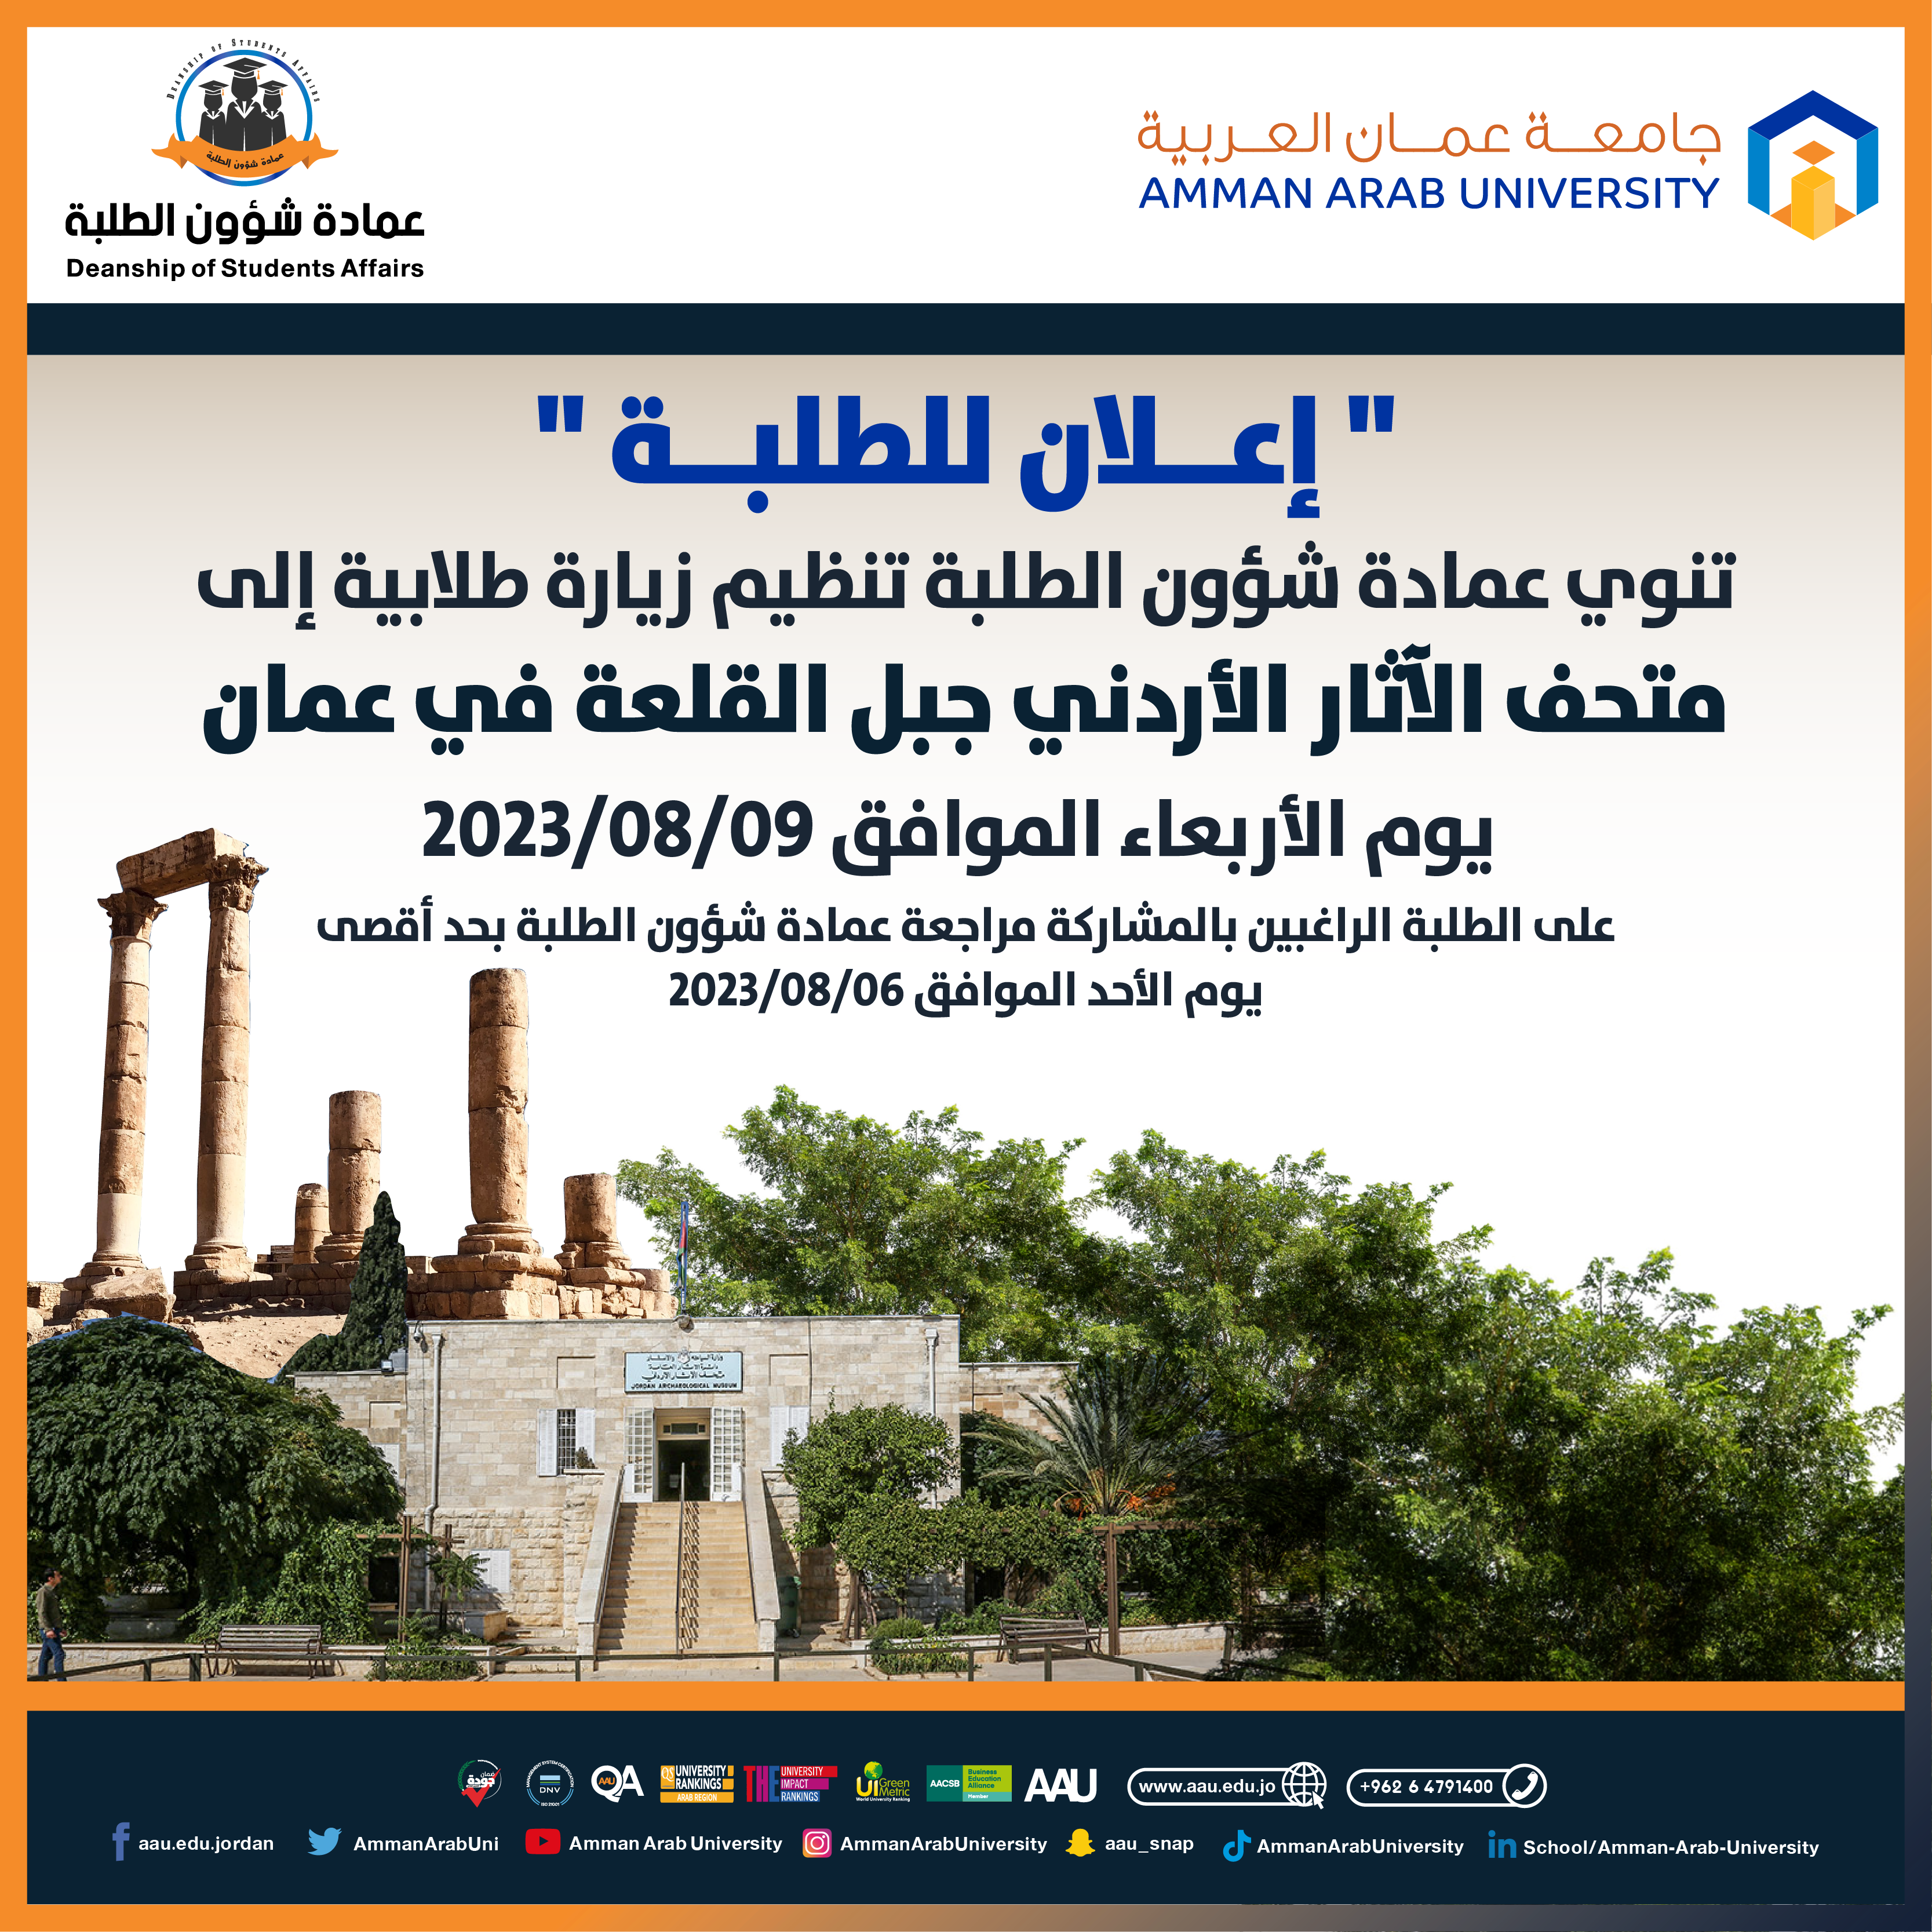 اعلان للطلبة لزيارة متحف الآثار الأردني - جبل القلعة